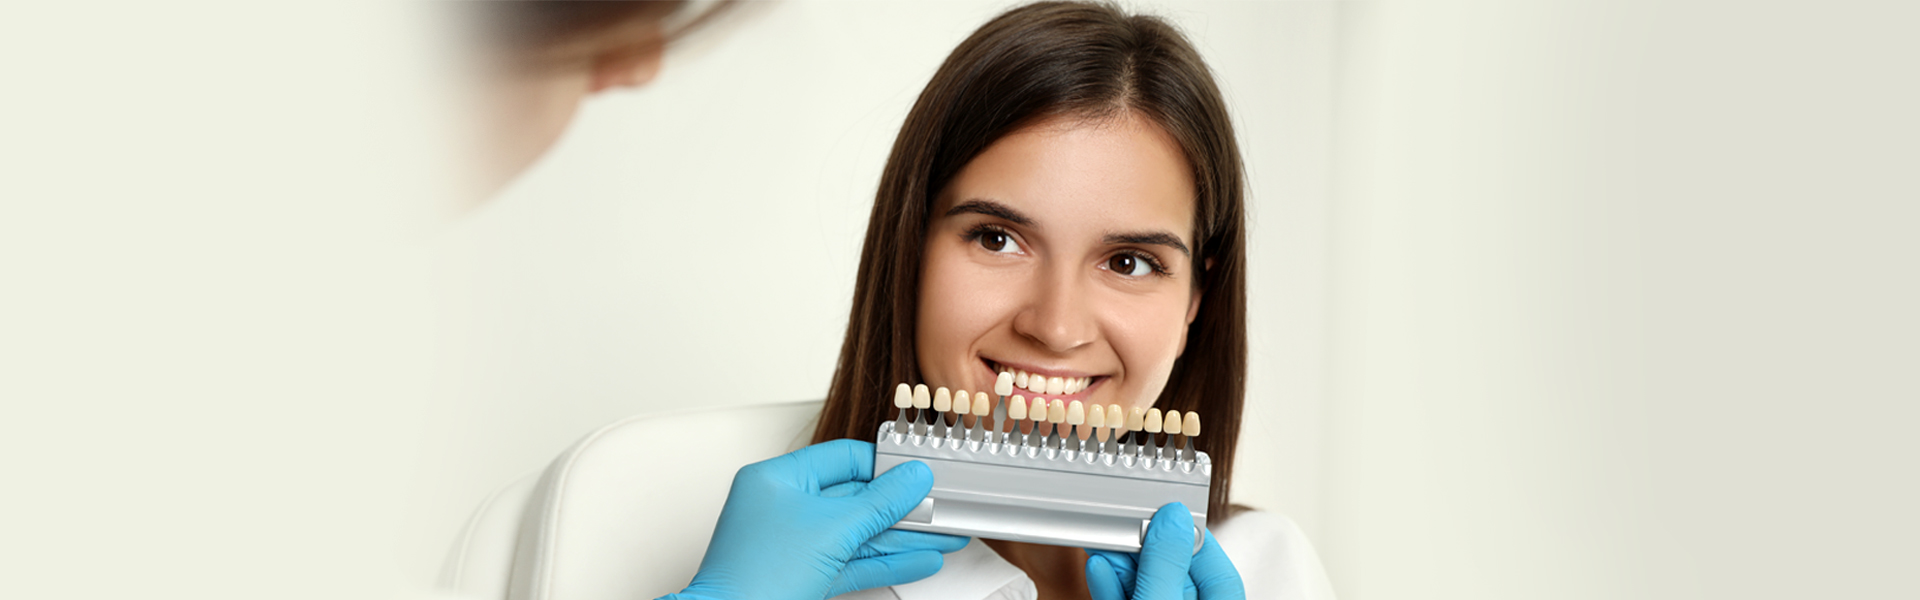 Dental Veneers: Procedure, Types, and Results